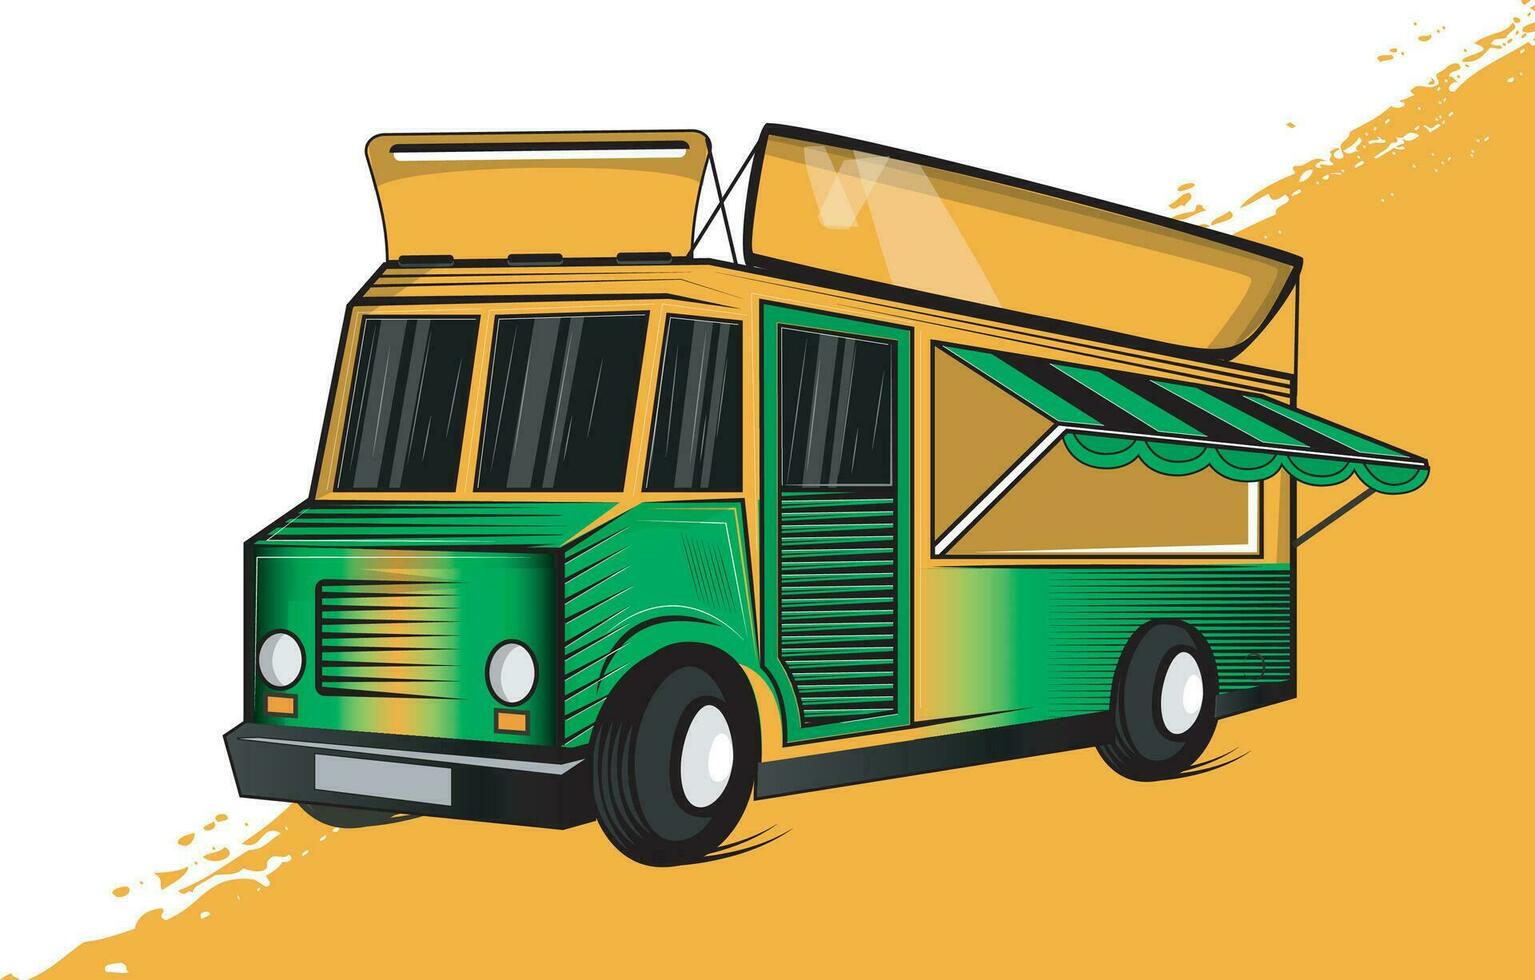 food truck illustration vector